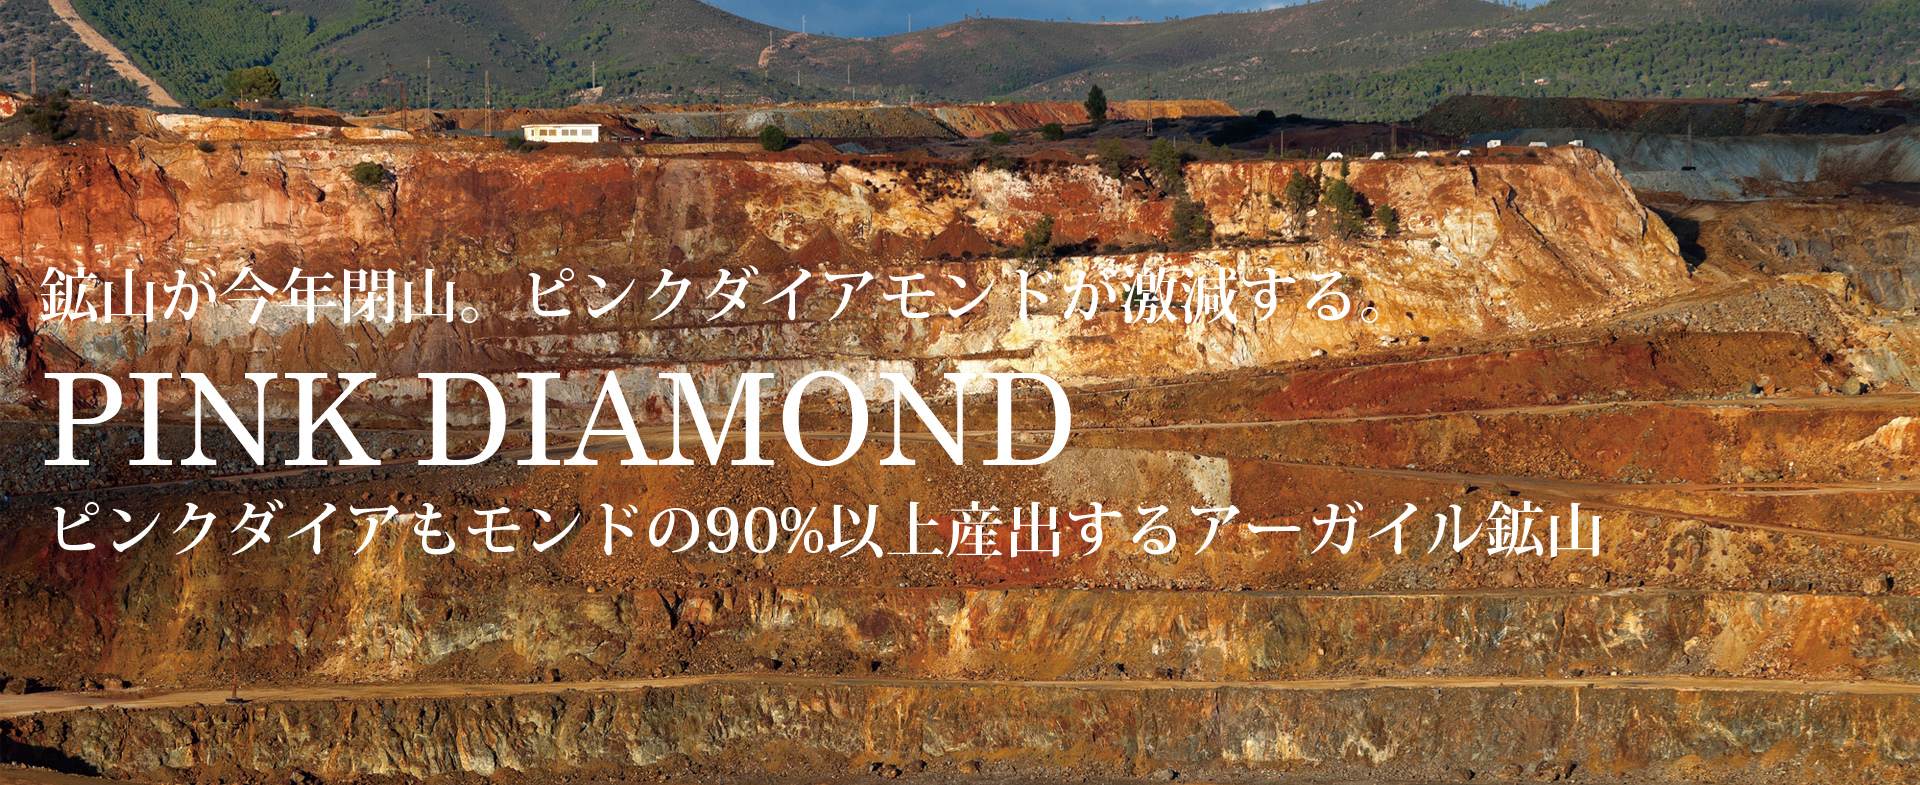 2020年に激減するピンクダイアモンドが久留米市のCHARISに大集合